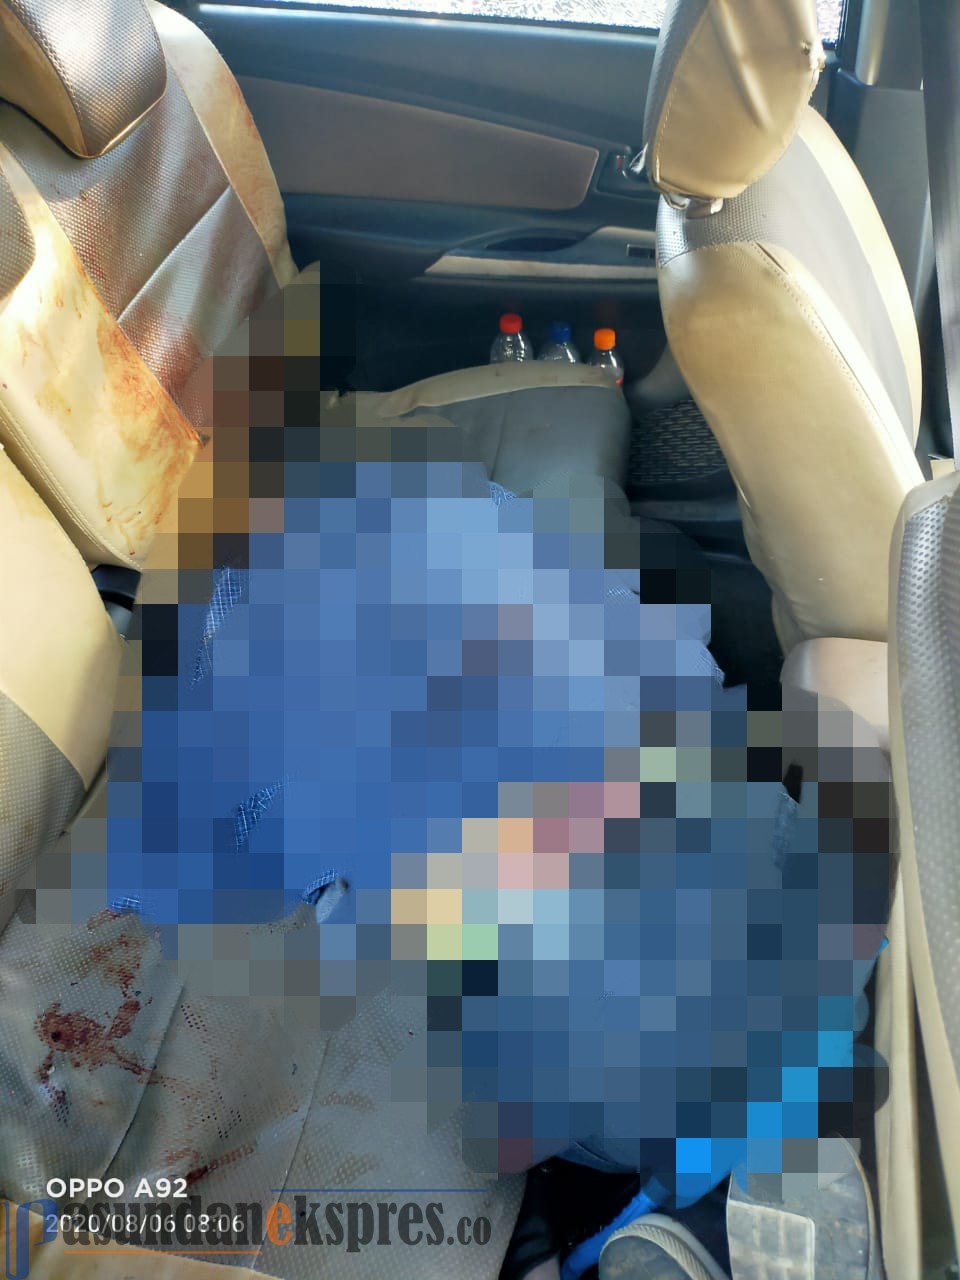 Update: Mayat di Mobil Diduga Pelaku Pembobol Ruko di Munjuljaya